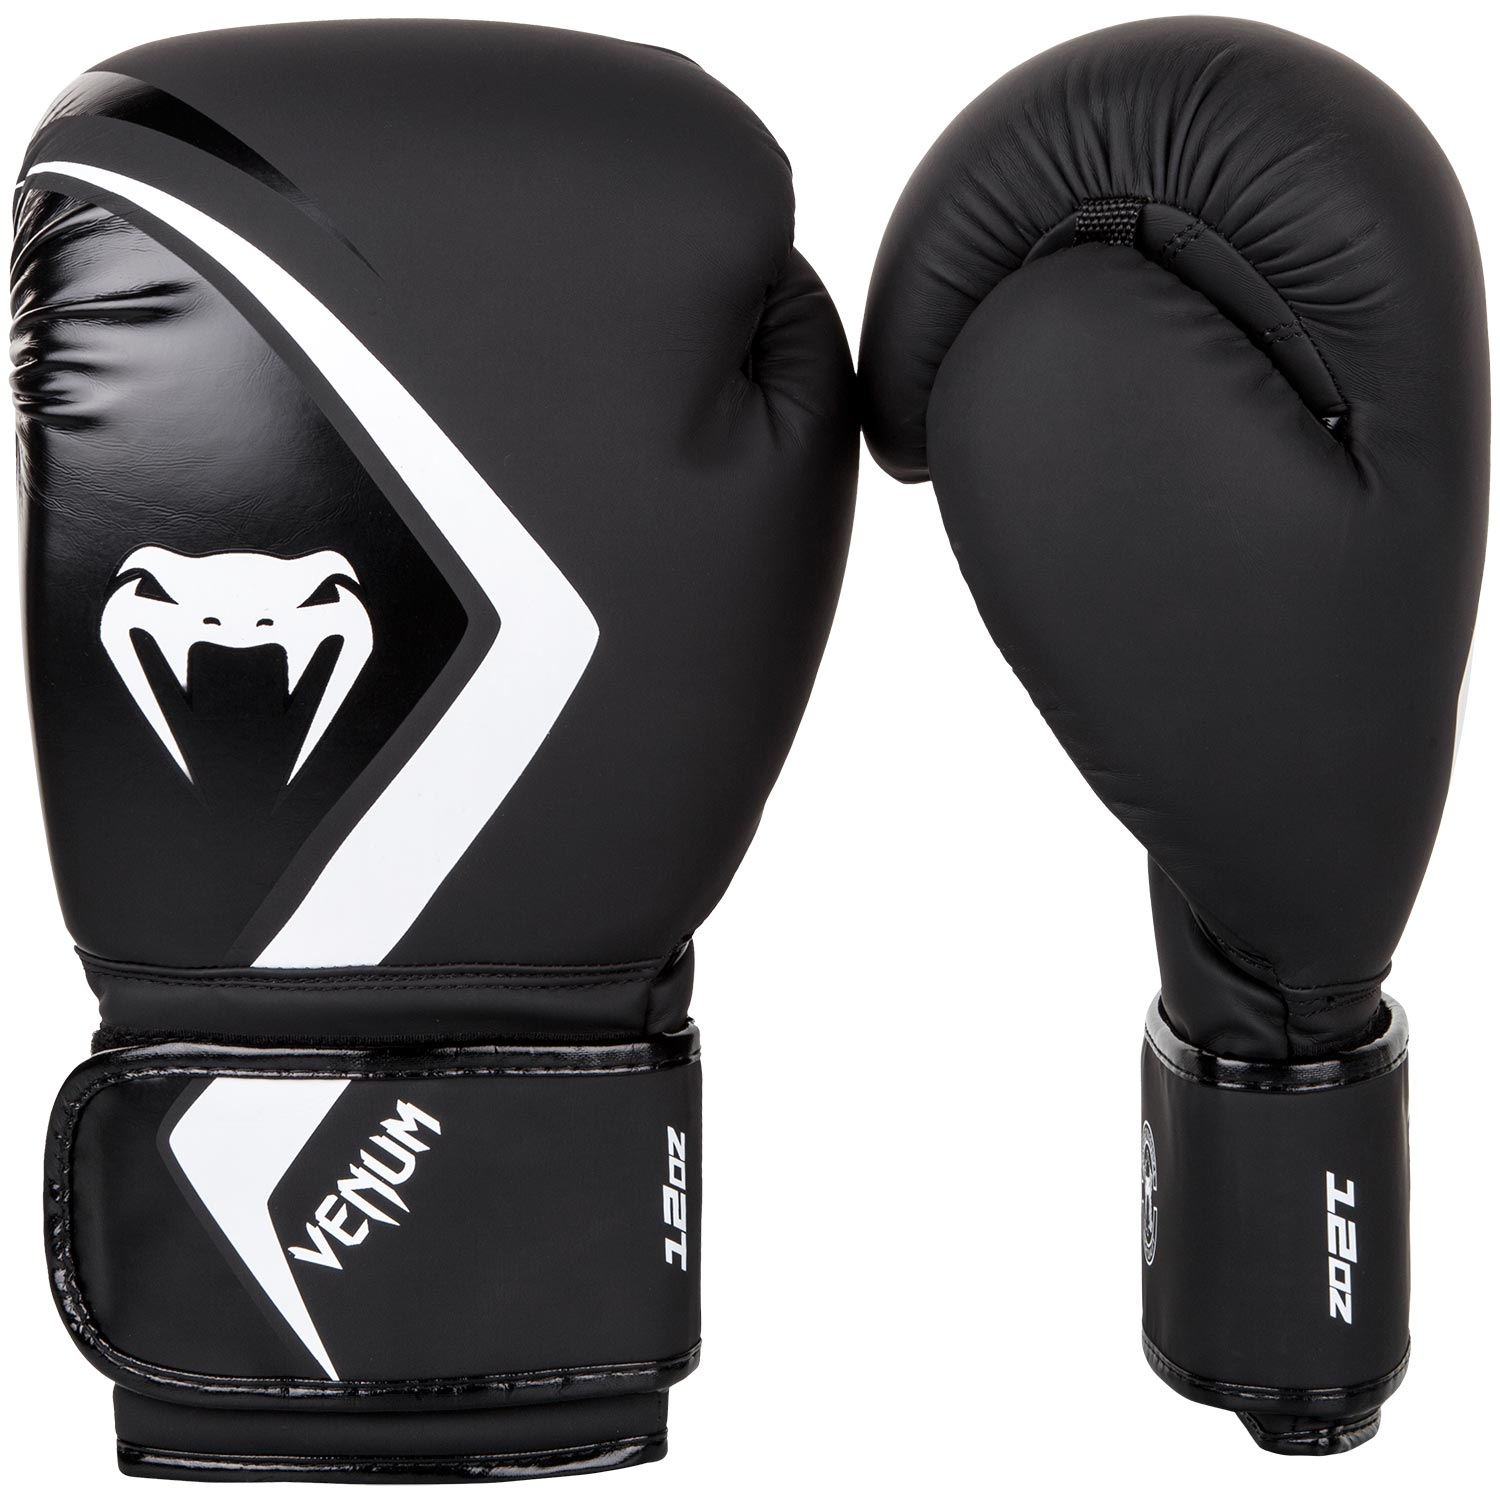 Boxerské rukavice Contender 2.0 černé/šedo-bílé VENUM vel. 14 oz